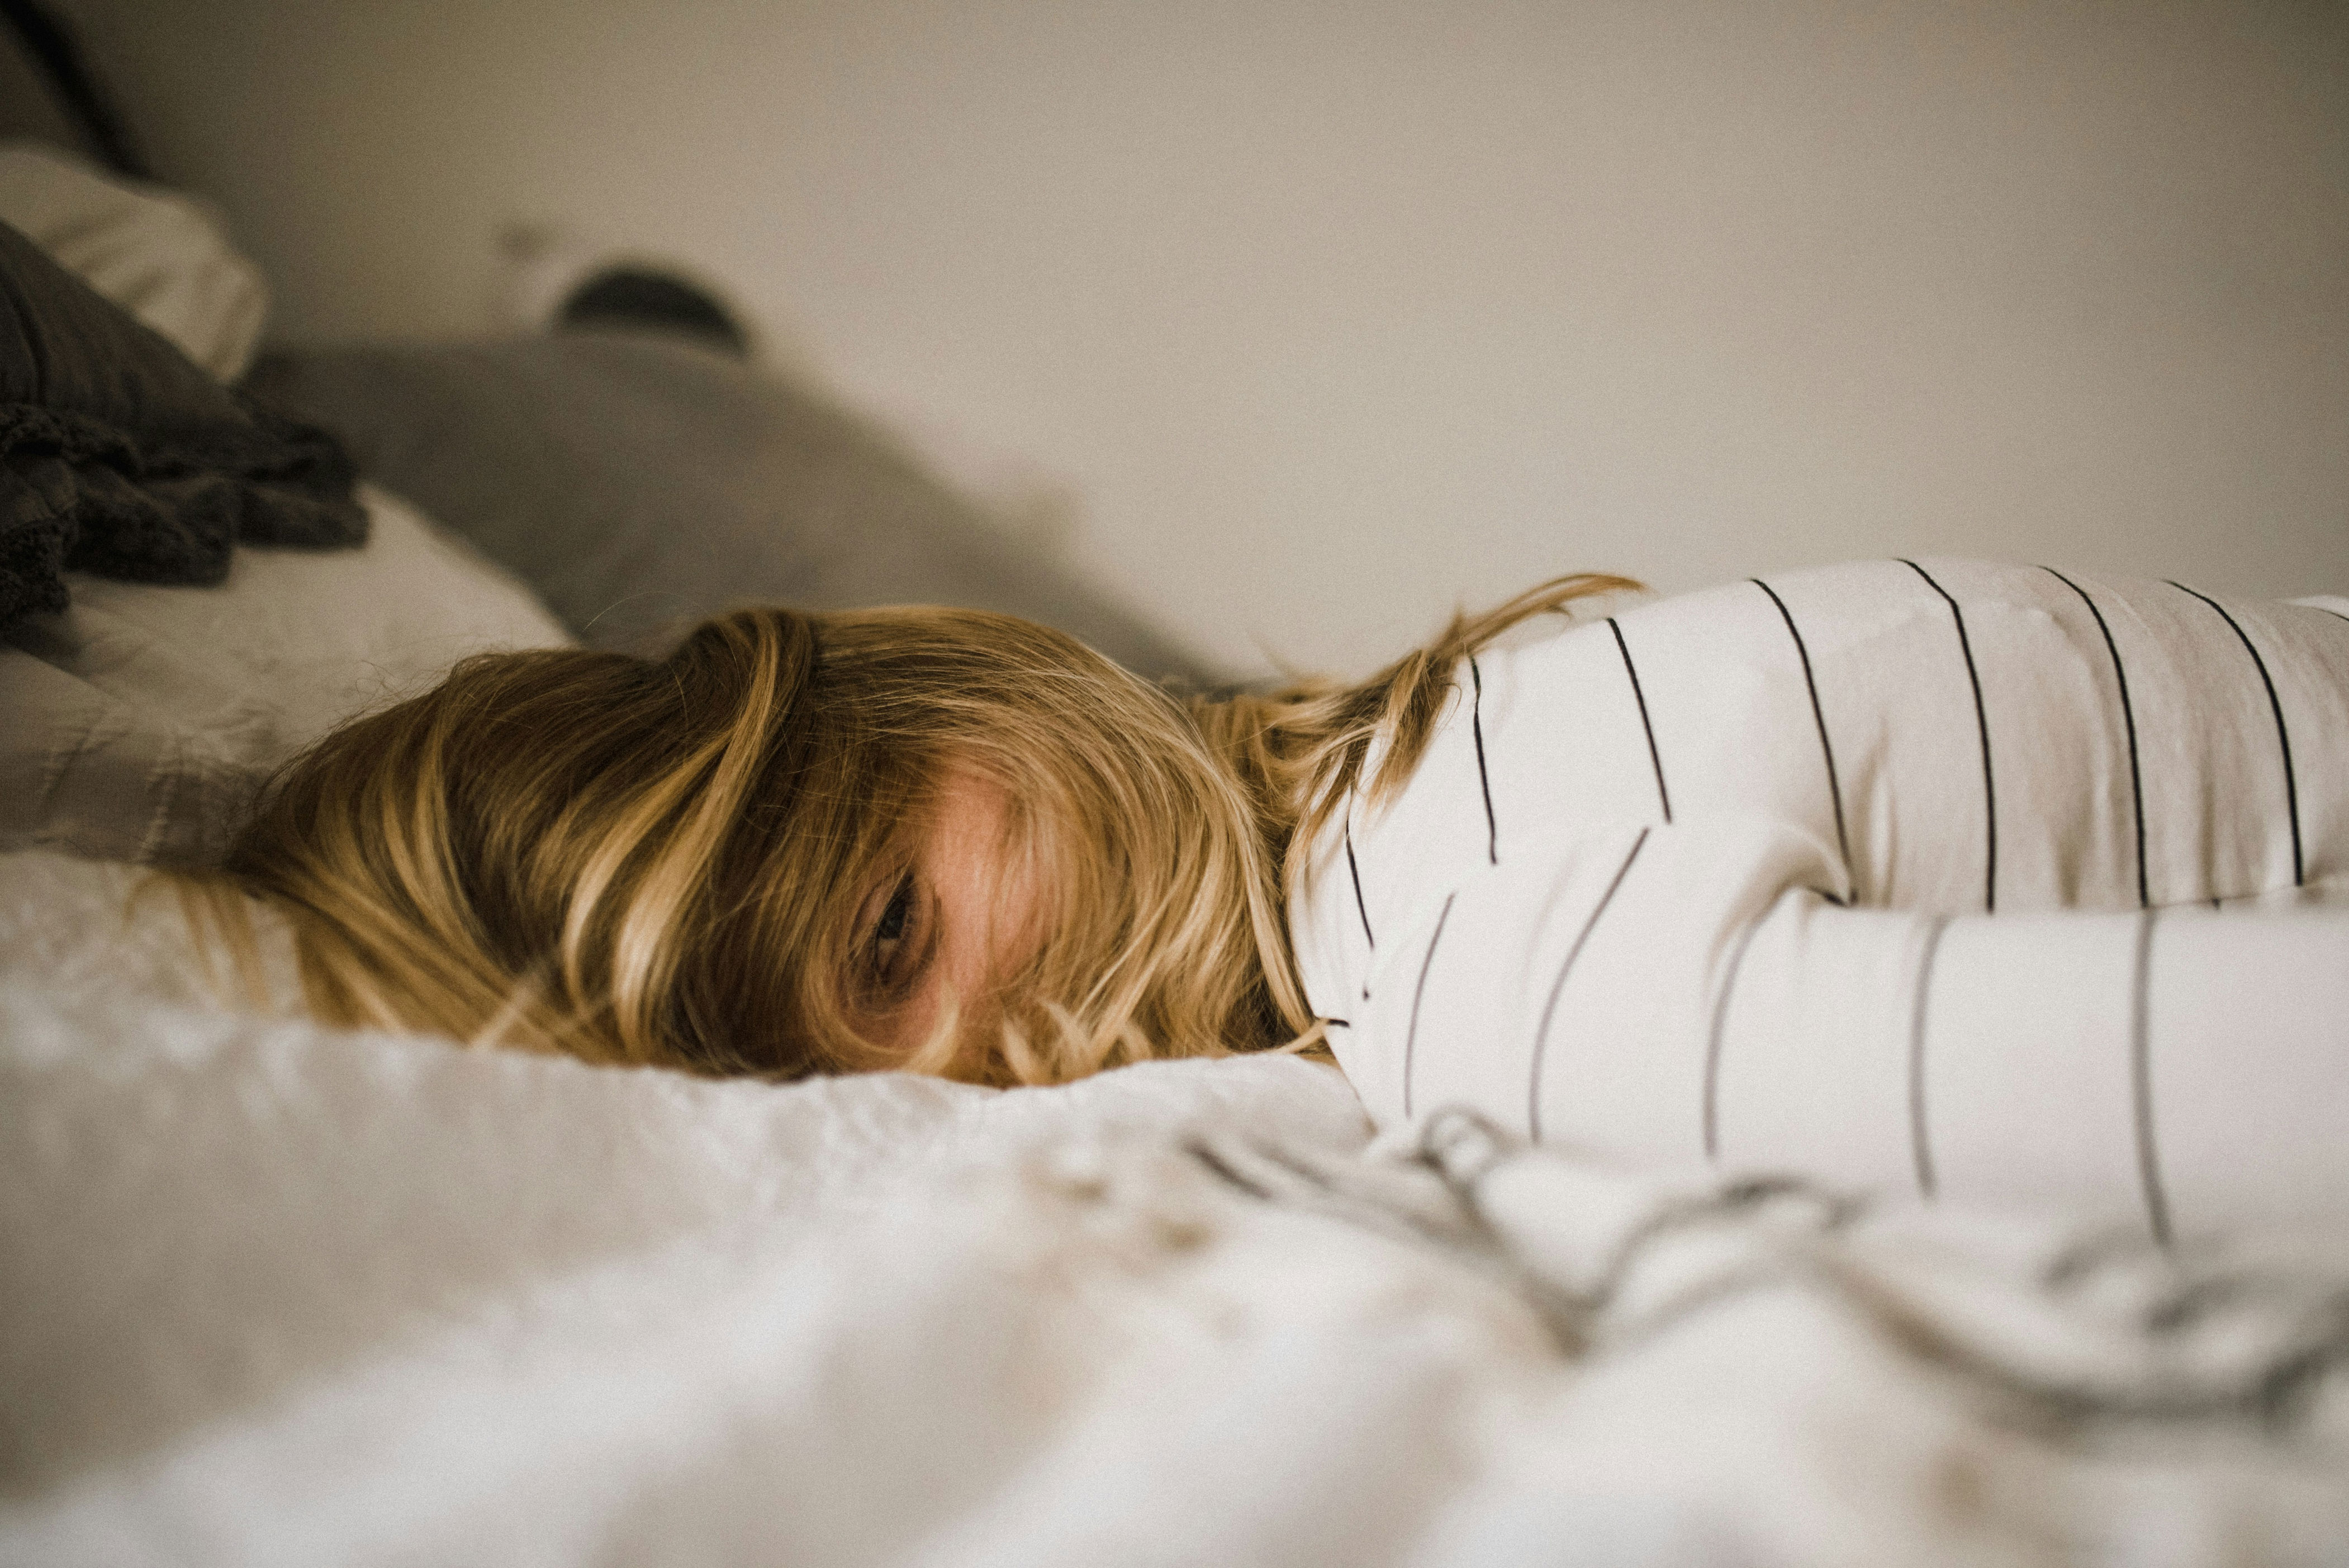 új módszerek láttak napvilágot, az alvásod módja megváltoztathatja az életed! alvásminőség javítása 12 egyszerű lépésben